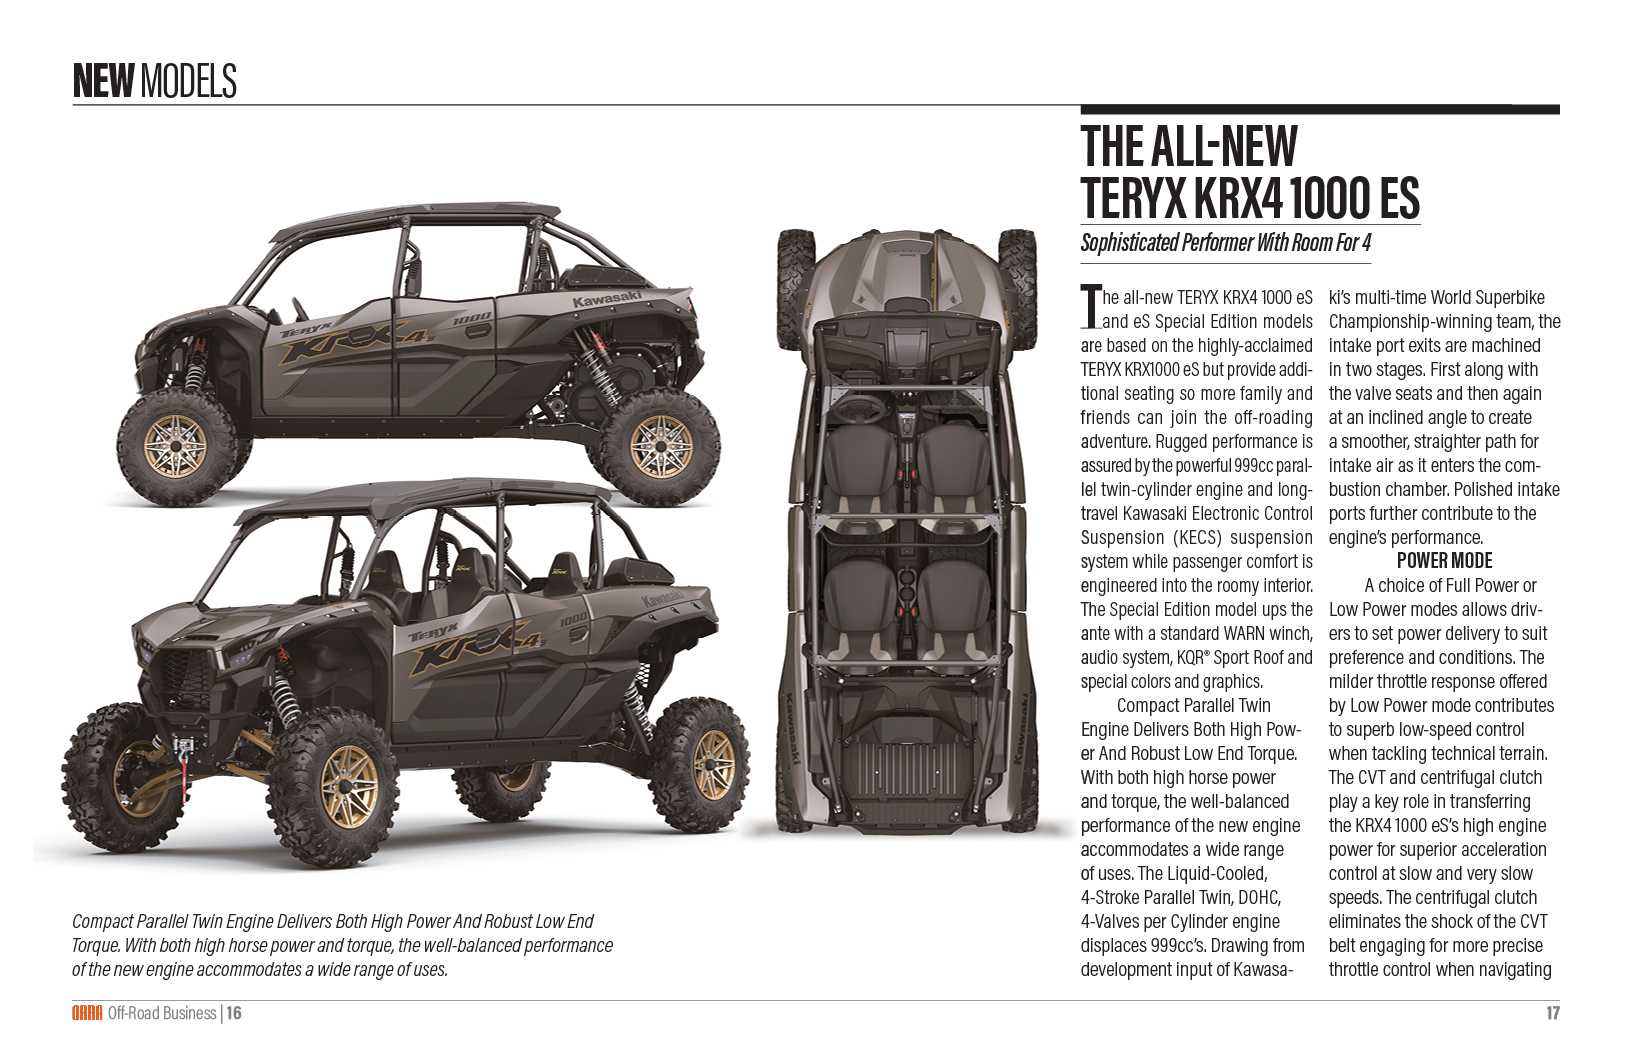 The All-New Teryx KRX4 1000 eS